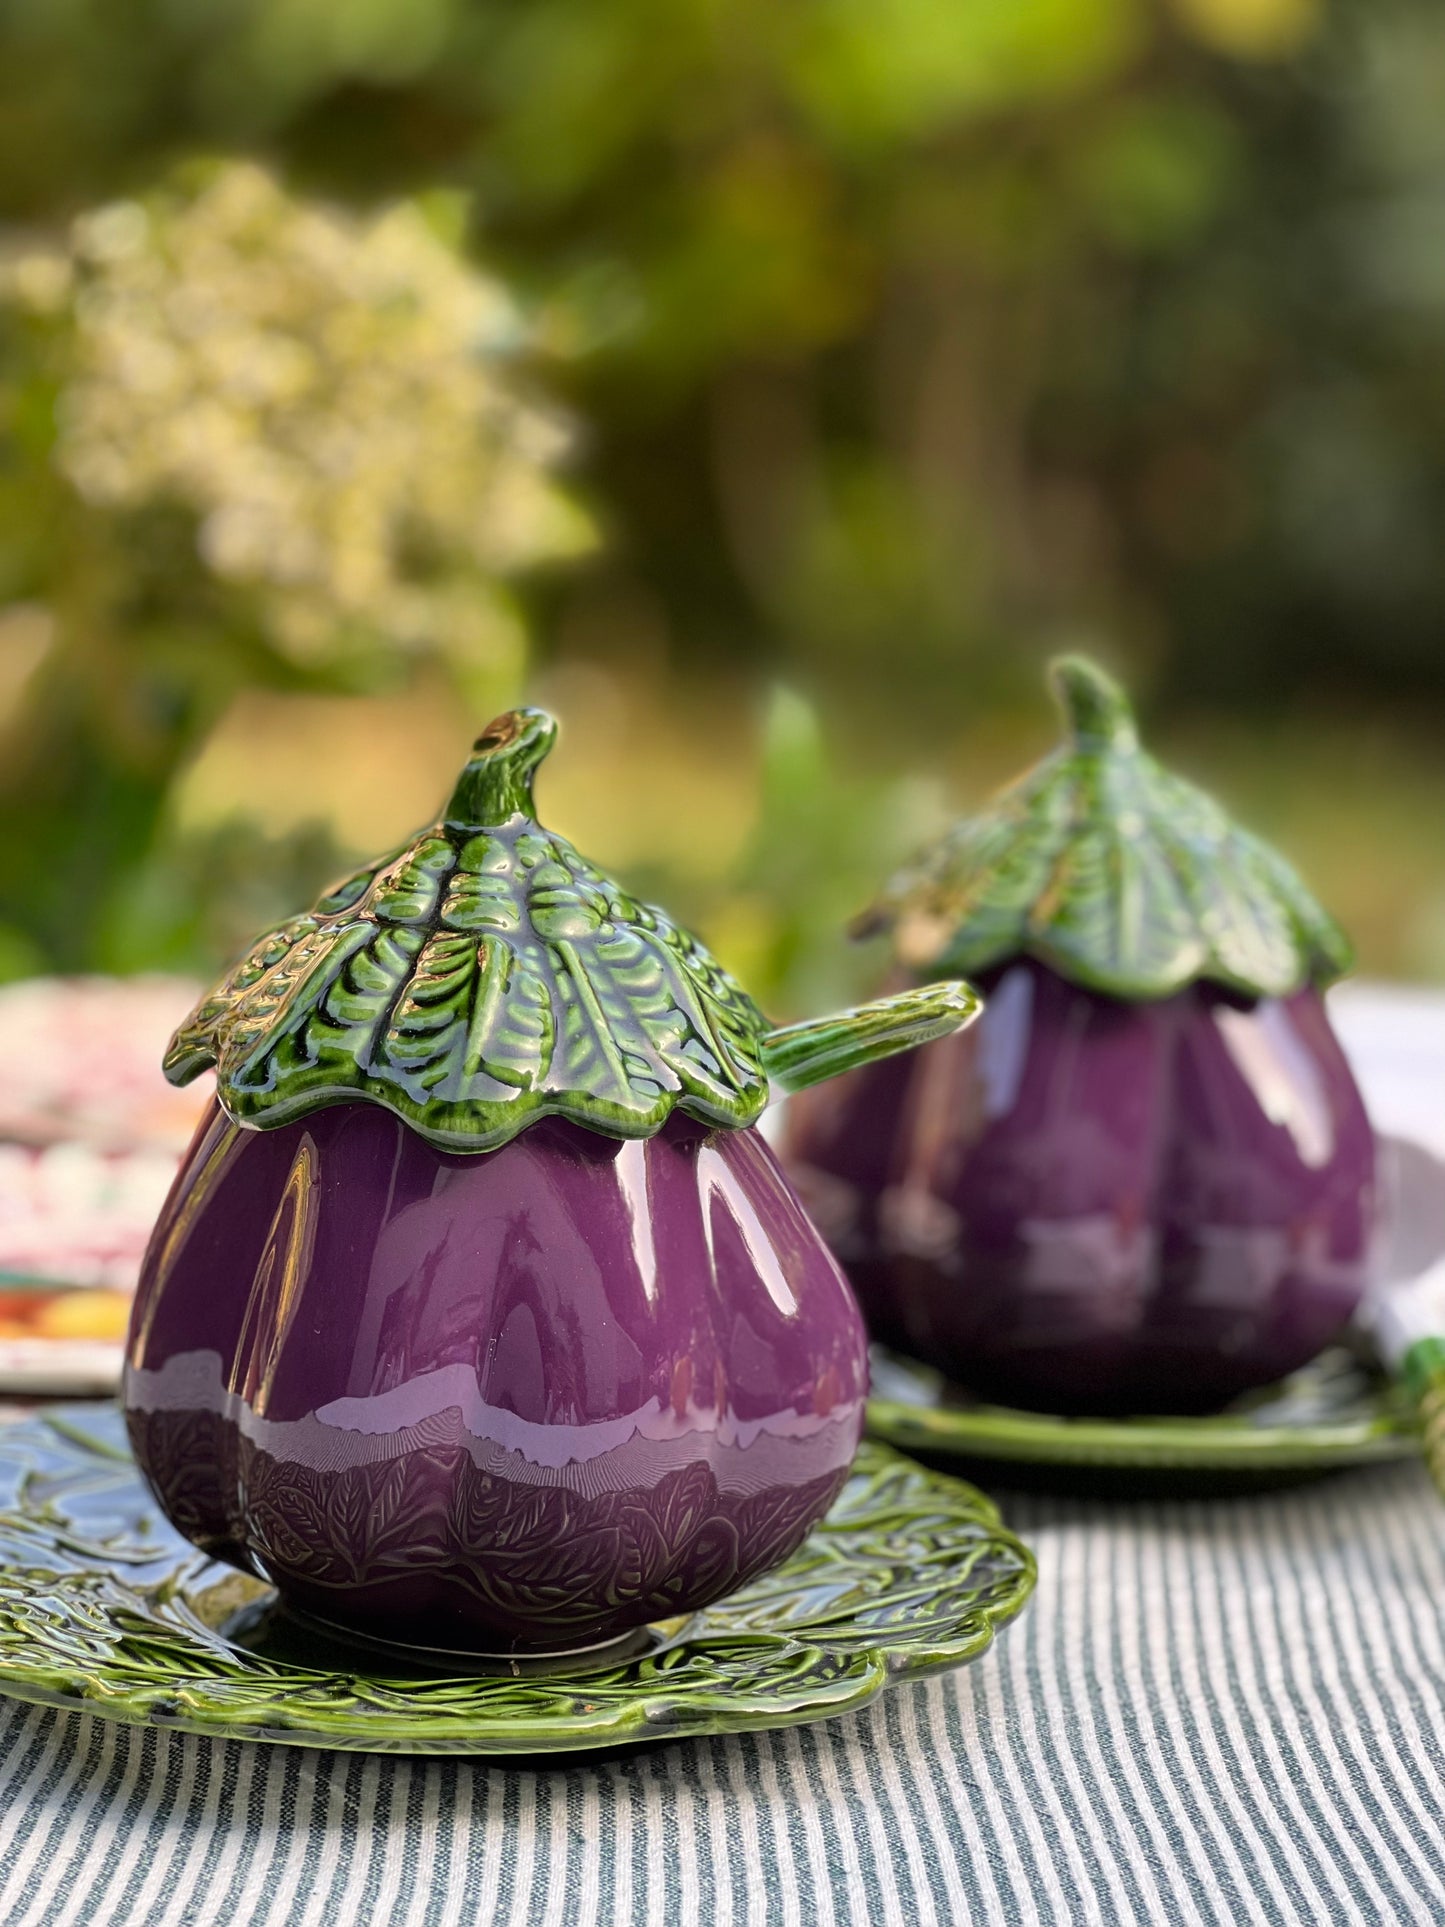 Grand confiturier/sucrier aubergine